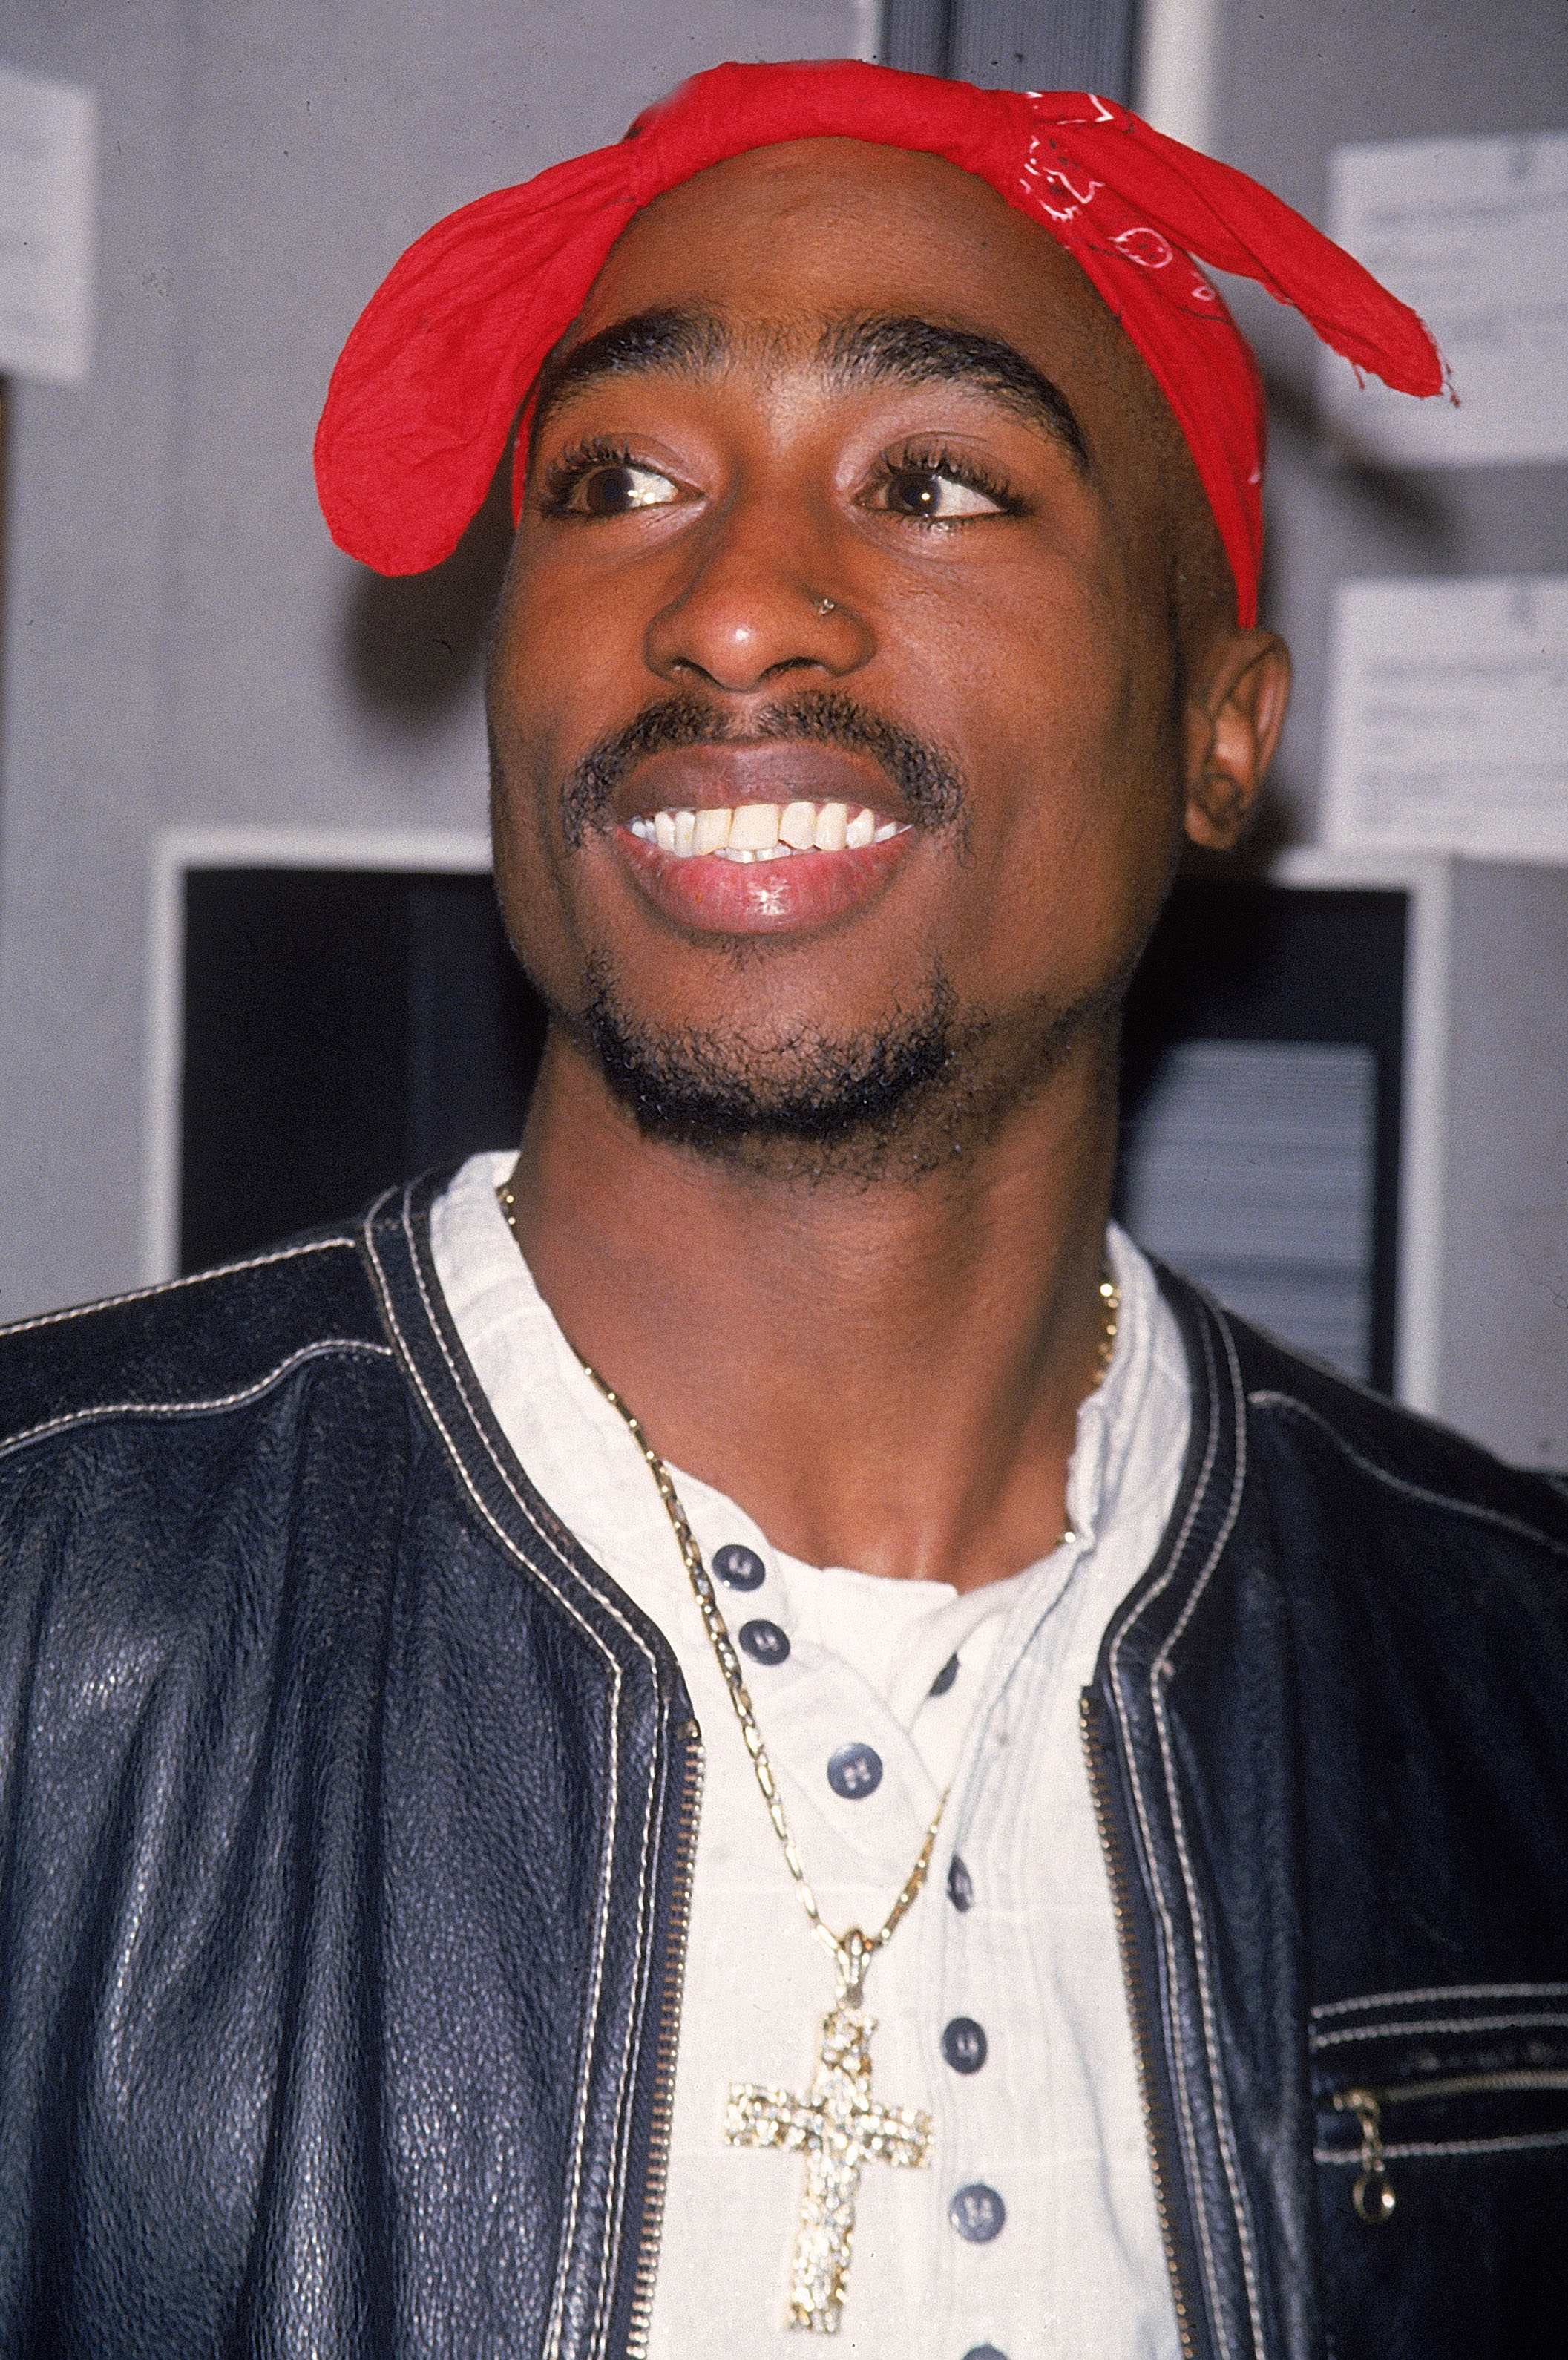 Nel 1996 il rapper Tupac Shakur morì senza testamento all'età di 25 anni, lasciando un patrimonio di 40 milioni di dollari. Fu sua madre a ereditare la sua fortuna.